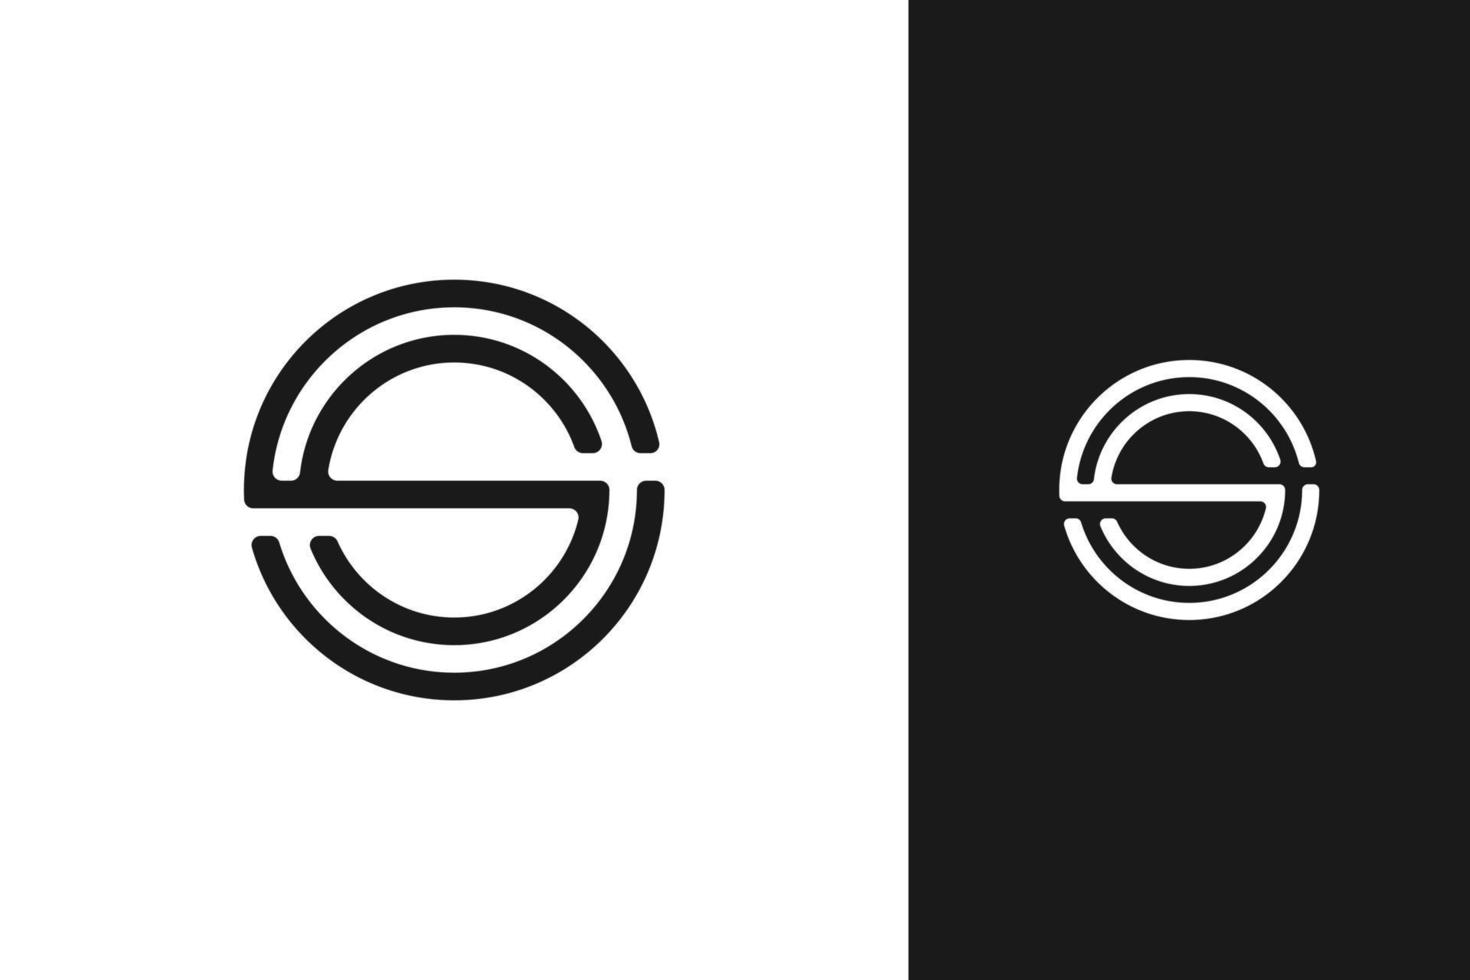 création de logo monogramme initial s simple et moderne minimal vecteur